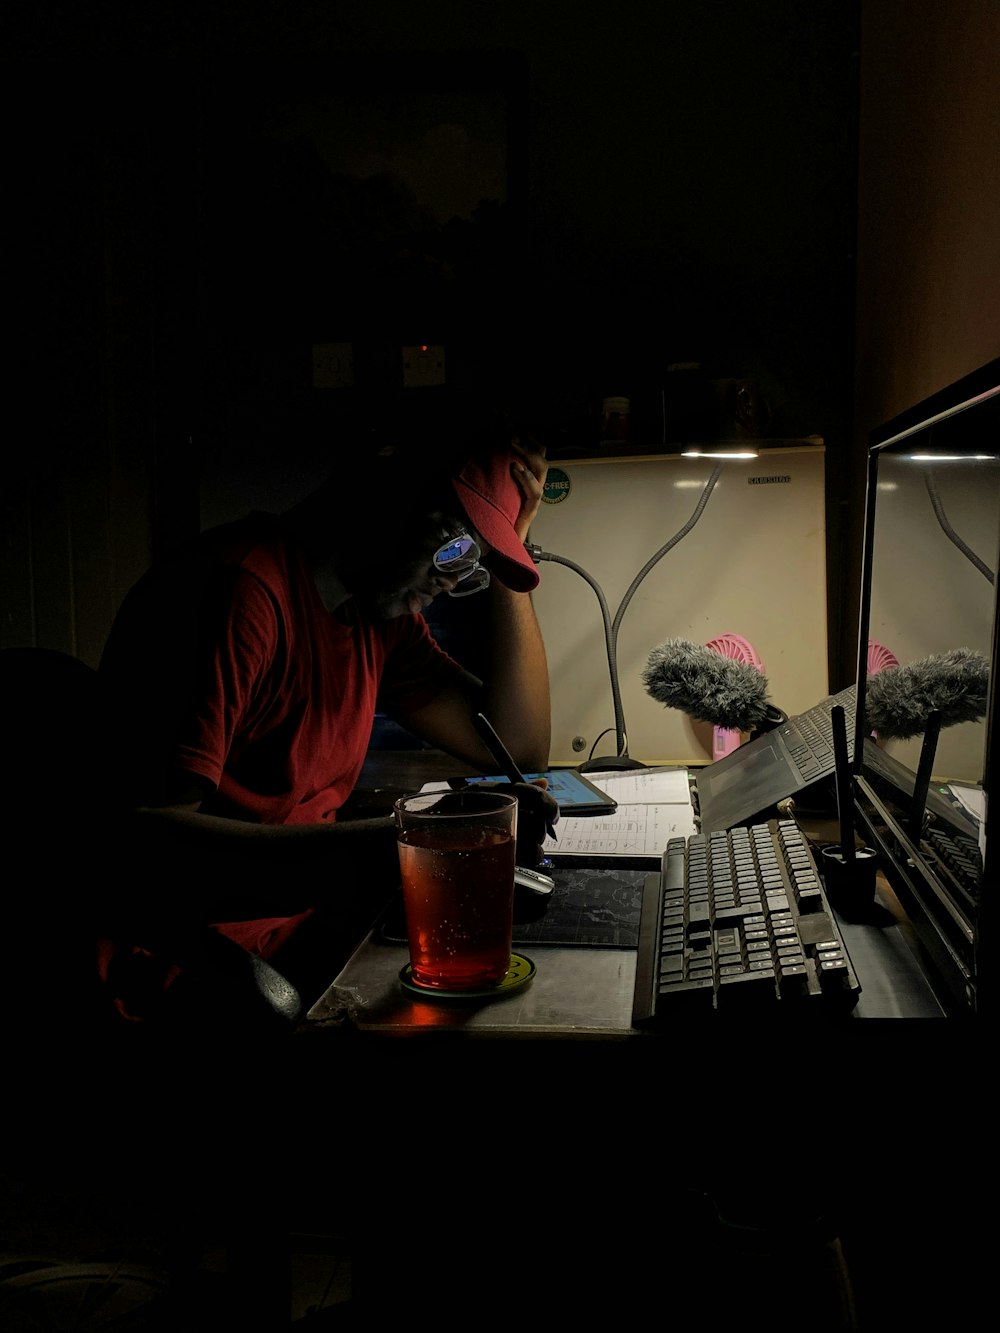 어둠 속에서 컴퓨터 앞에 앉아 있는 남자